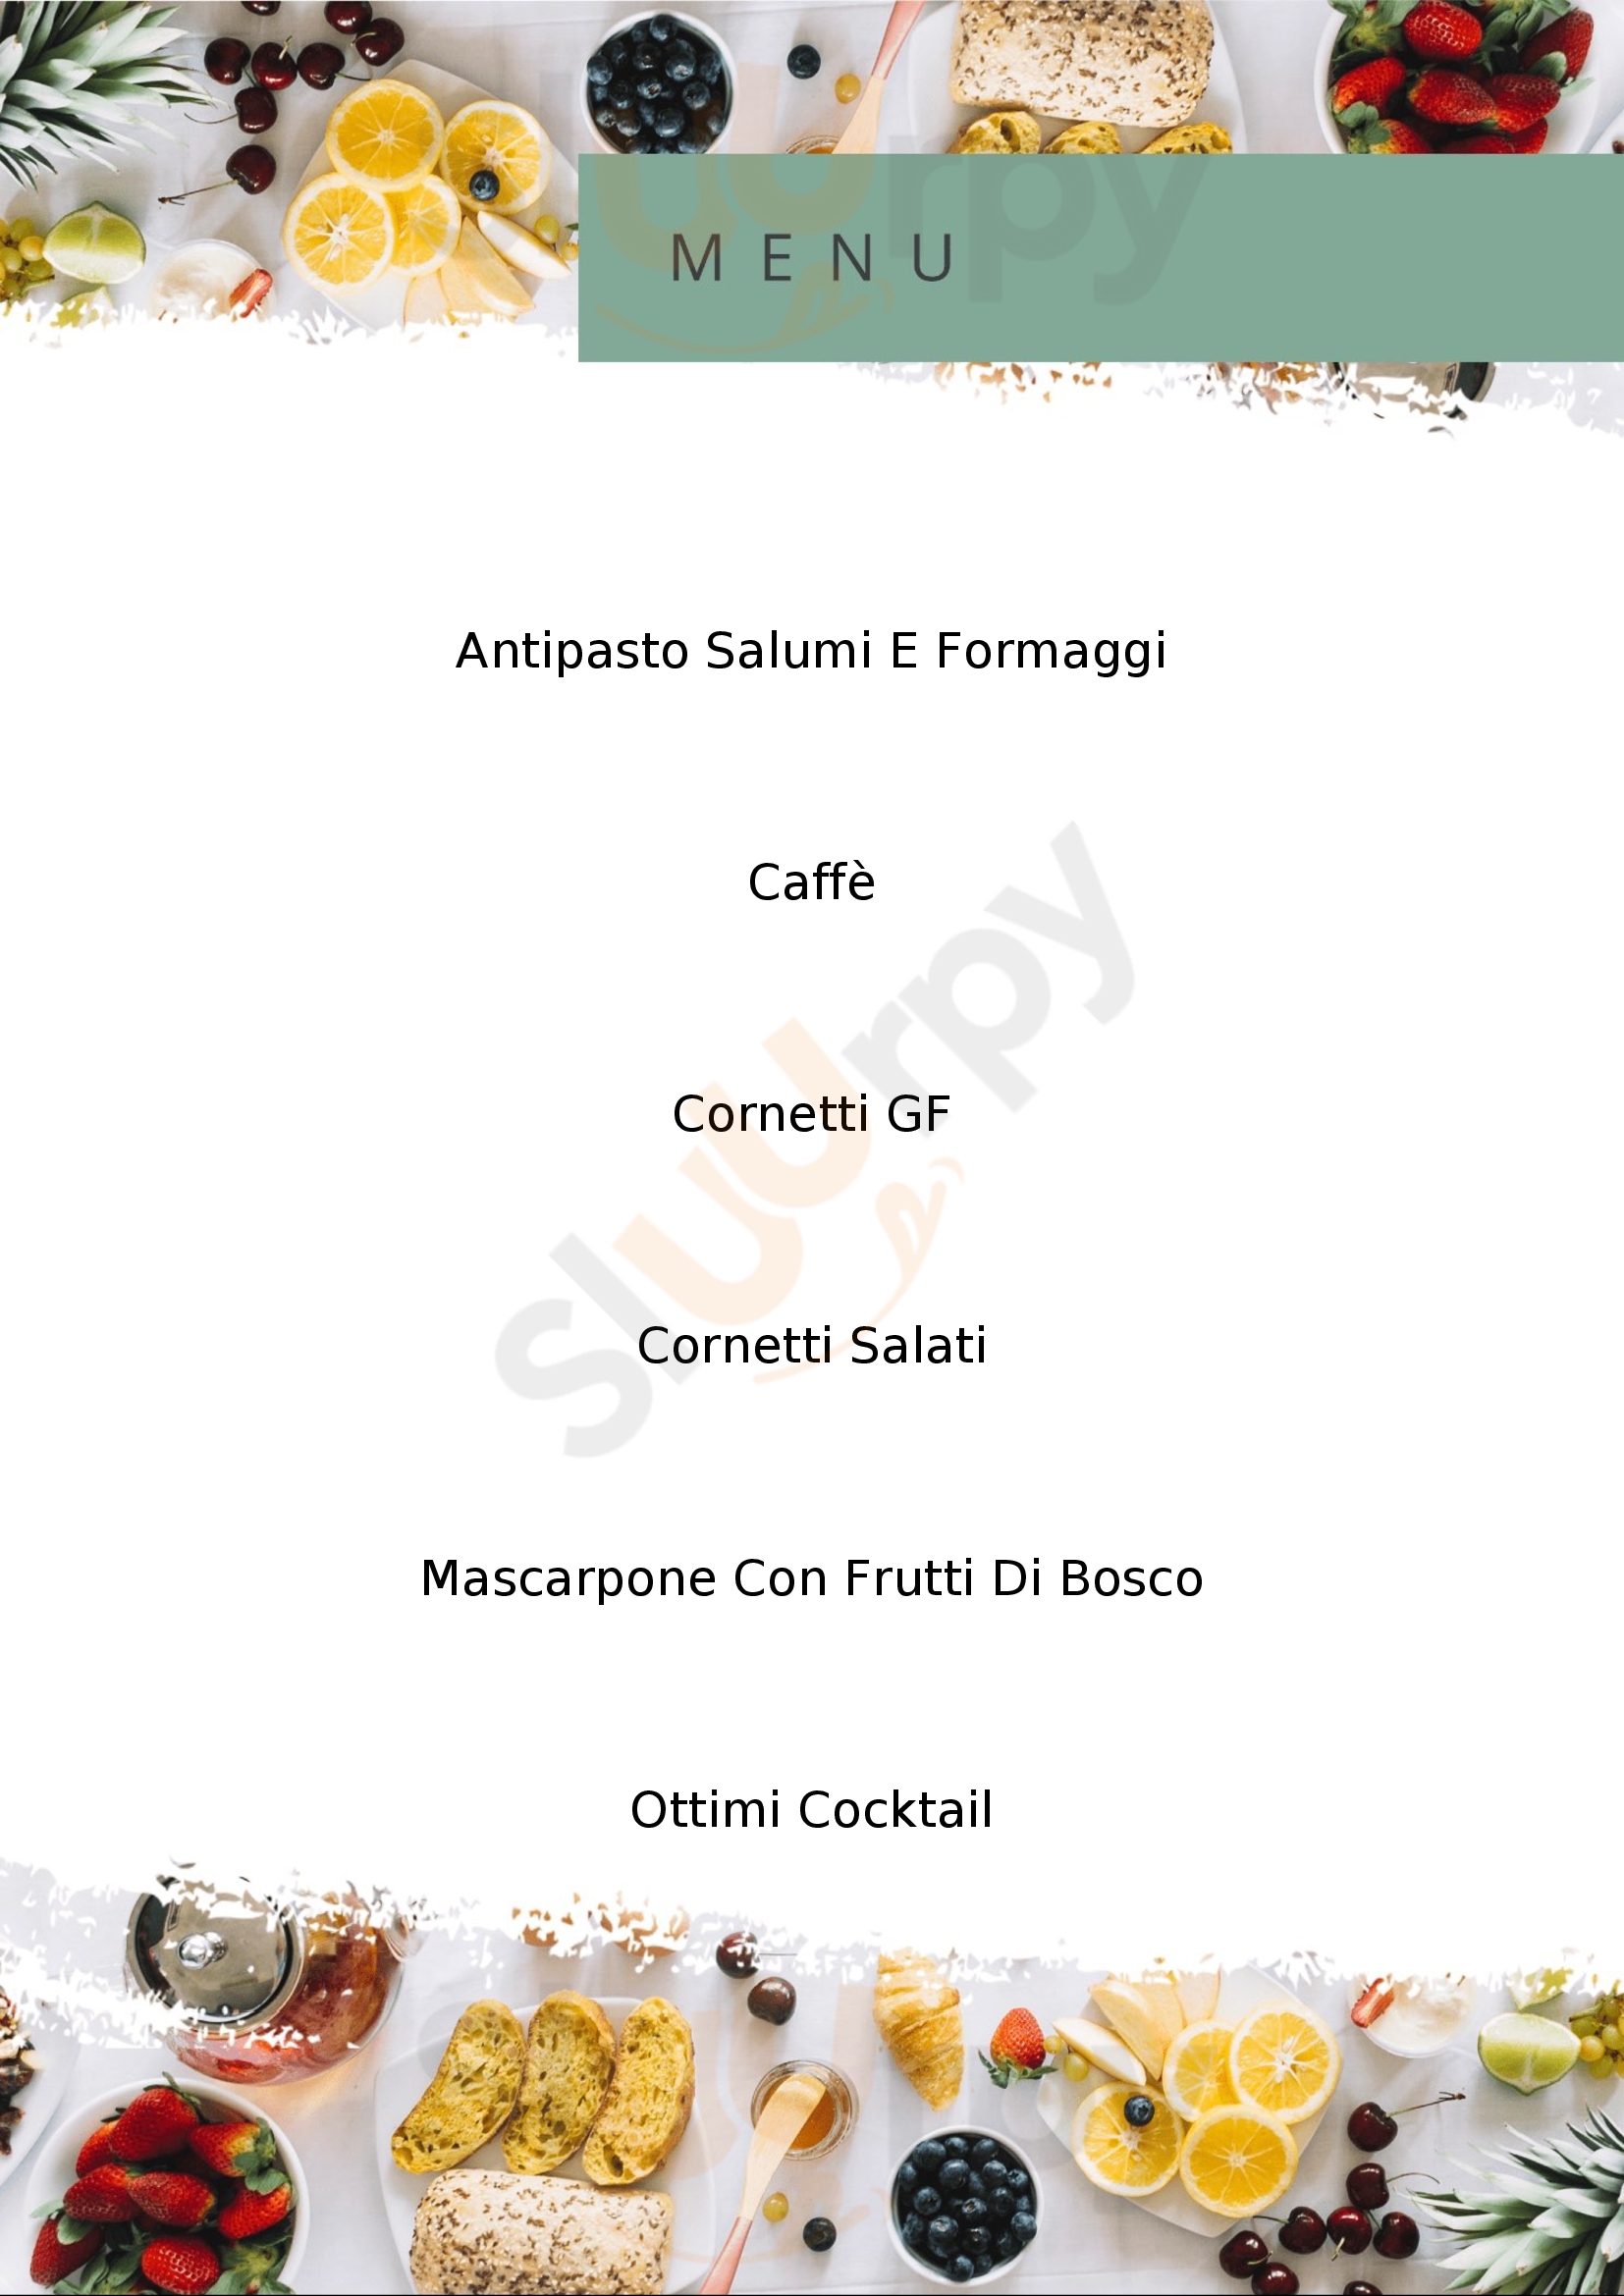 Fiordaliso Caffetteria Bologna menù 1 pagina